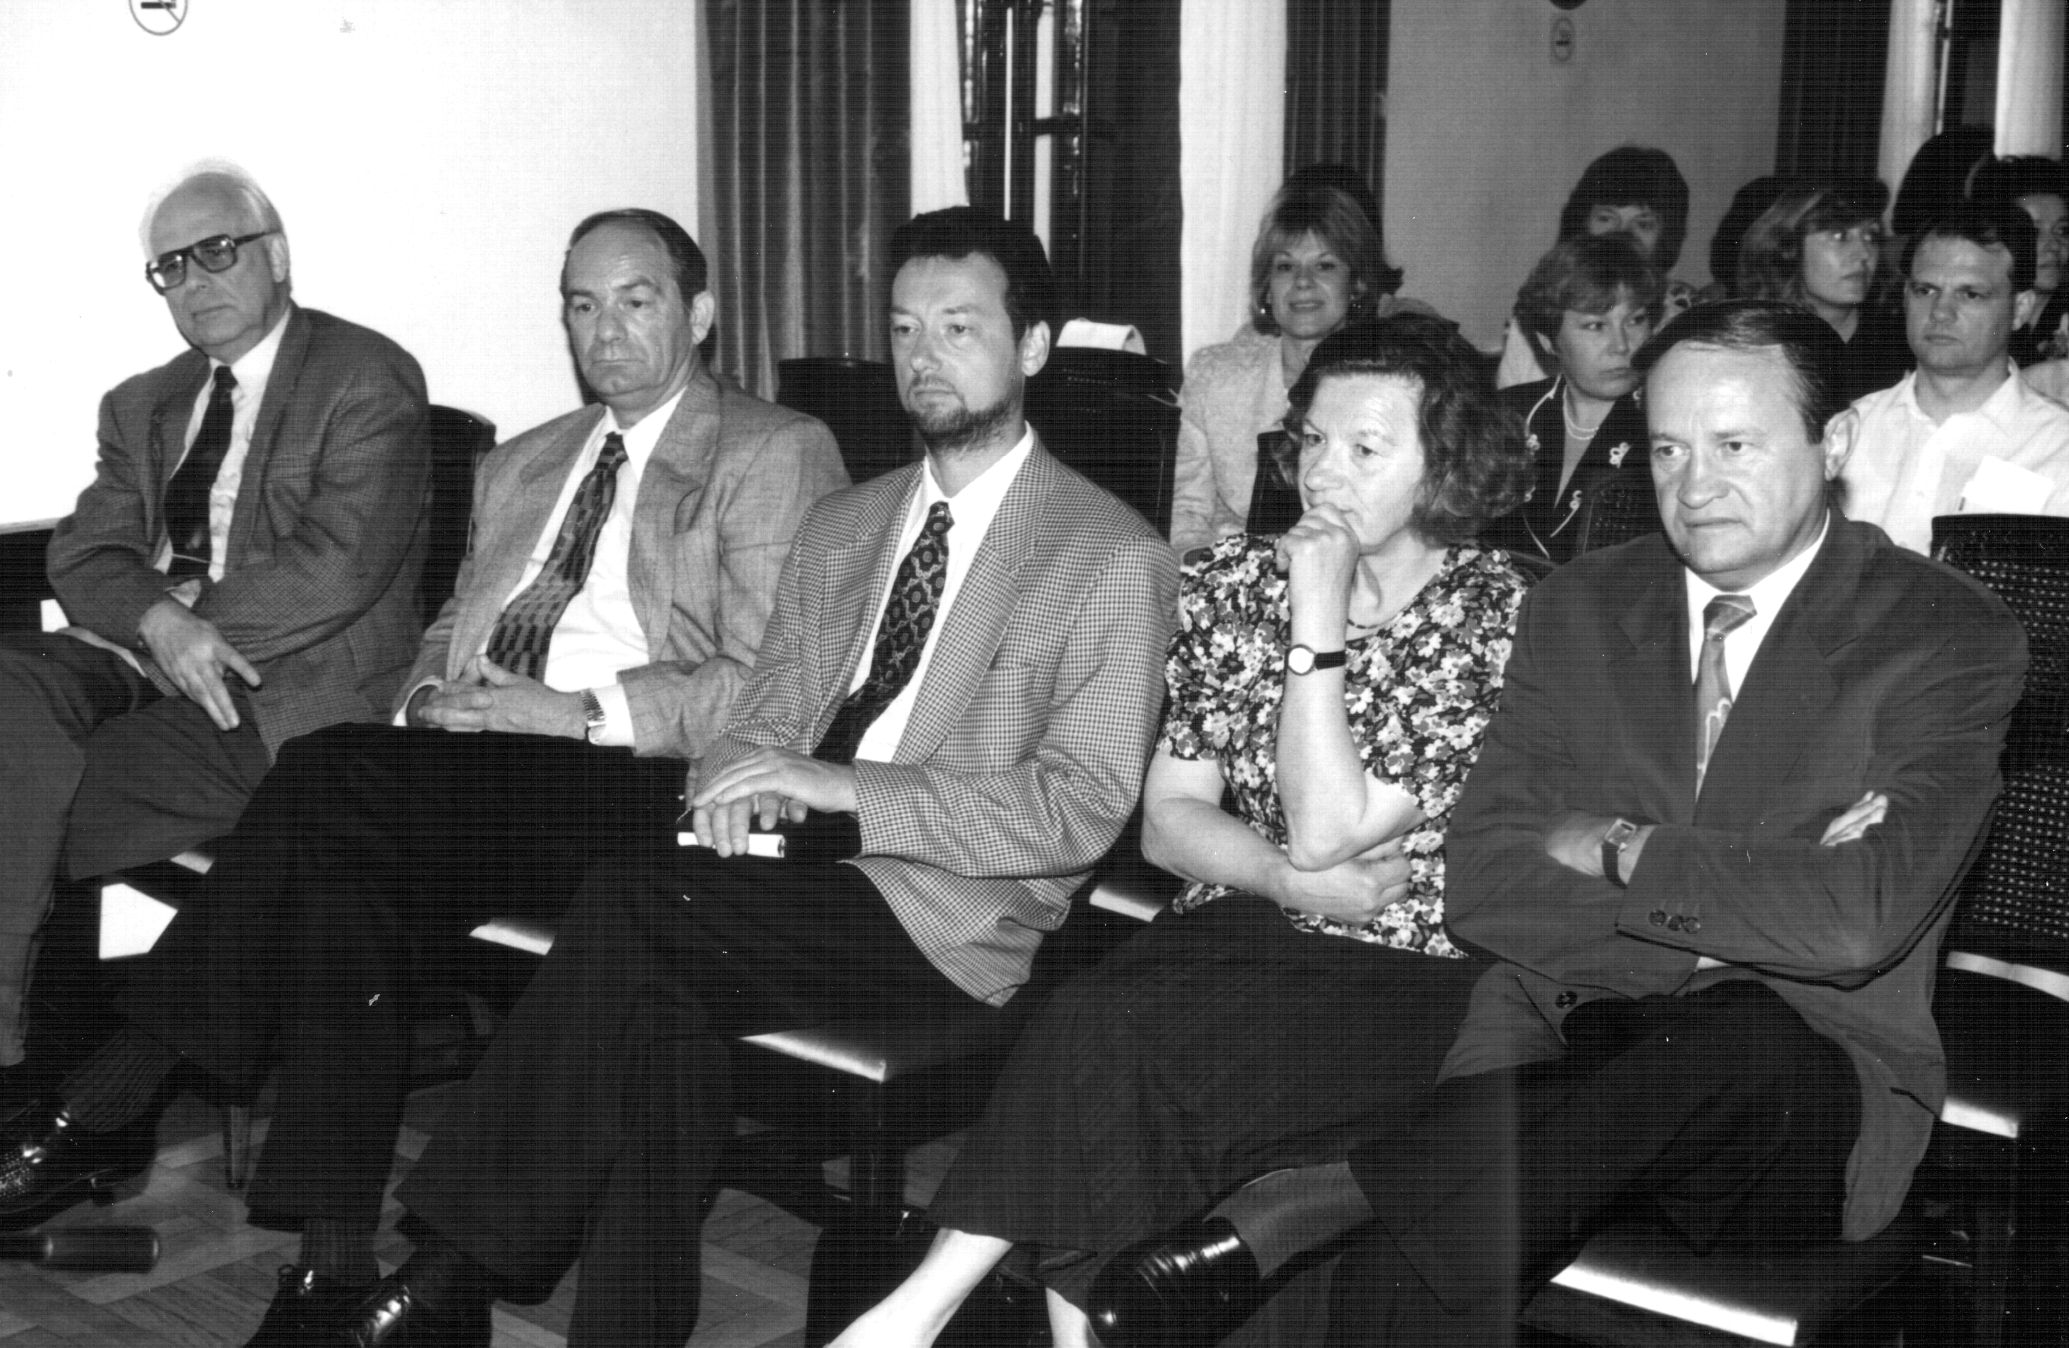 Forum odličnosti in mojstrstva Otočec, 1989